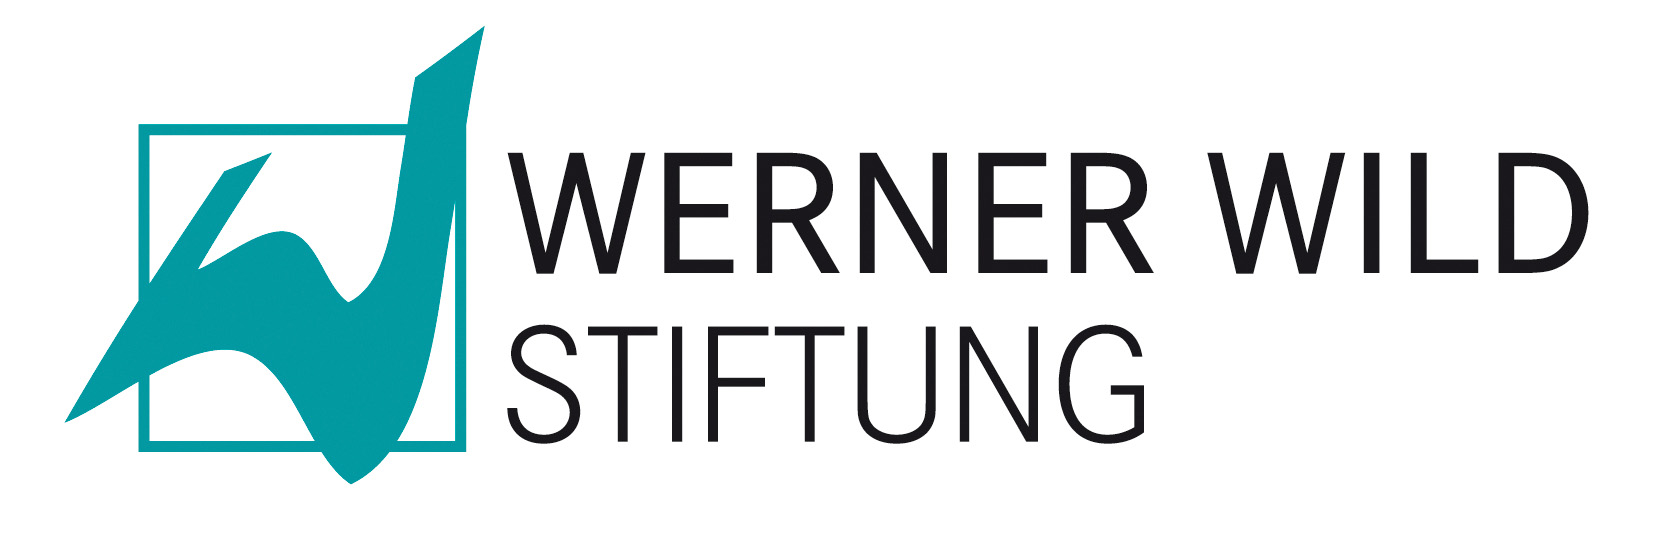 Logo der Werner Wild Stiftung